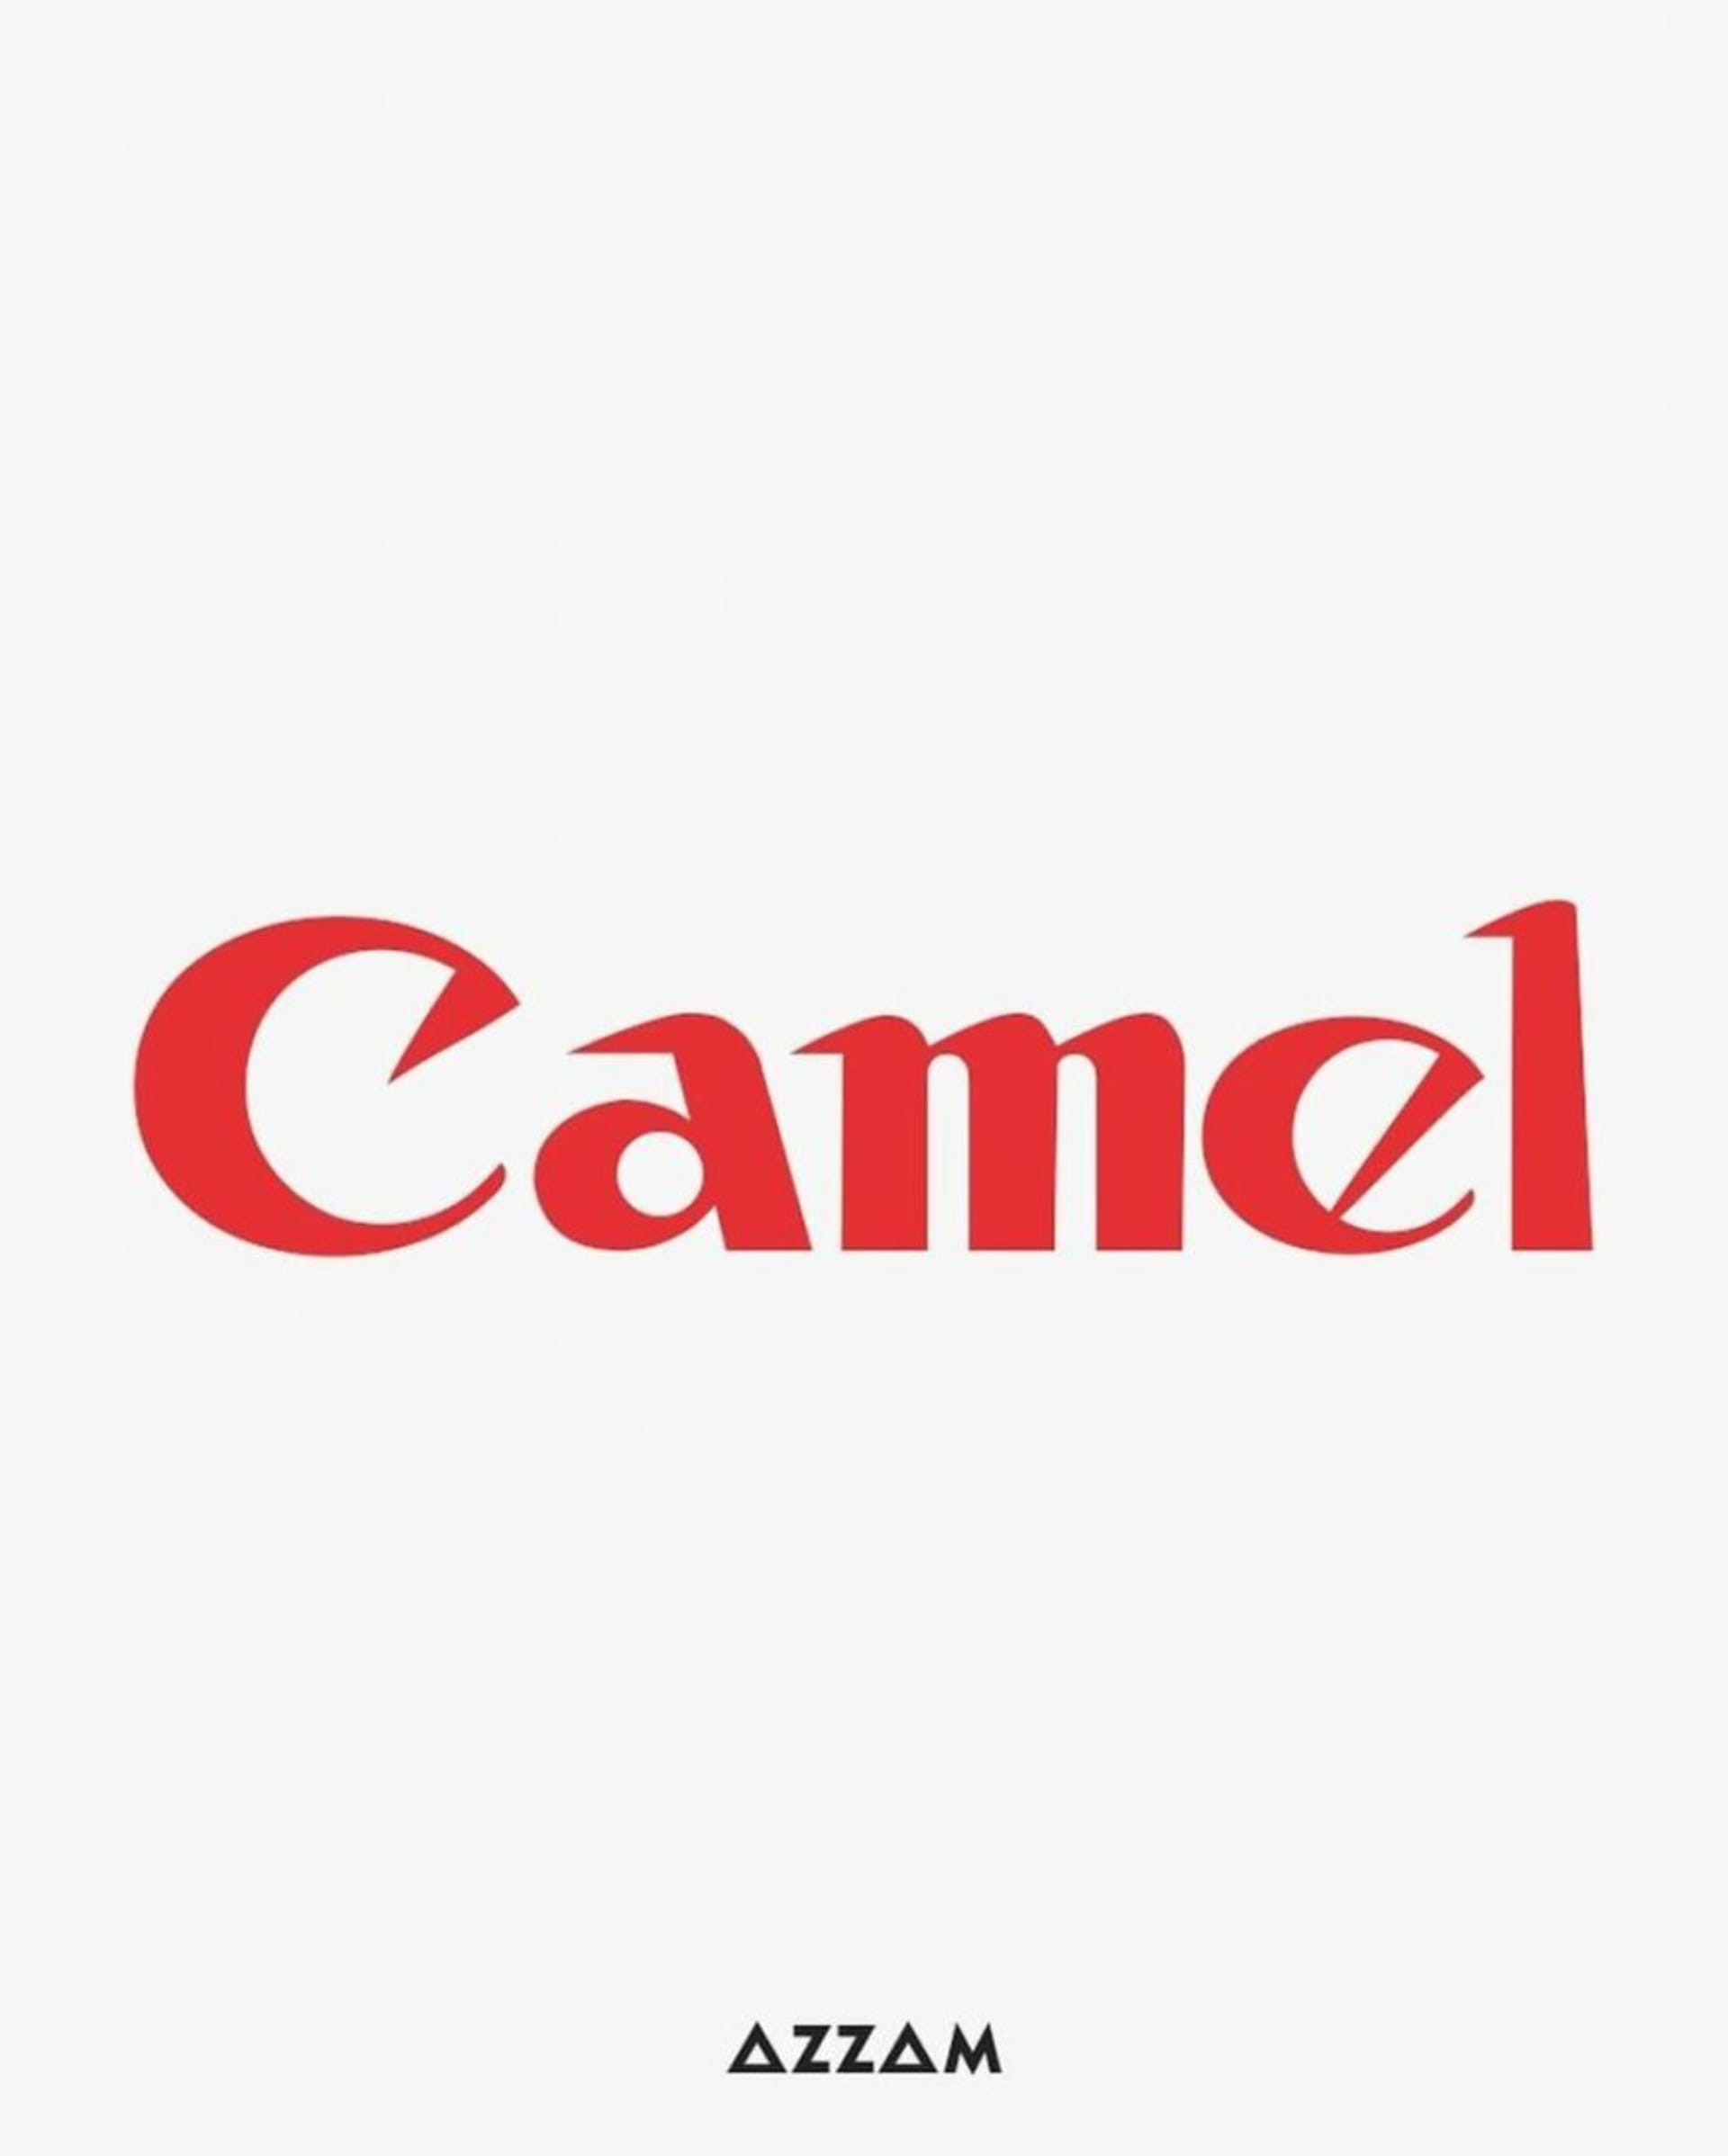 Canon X Camel